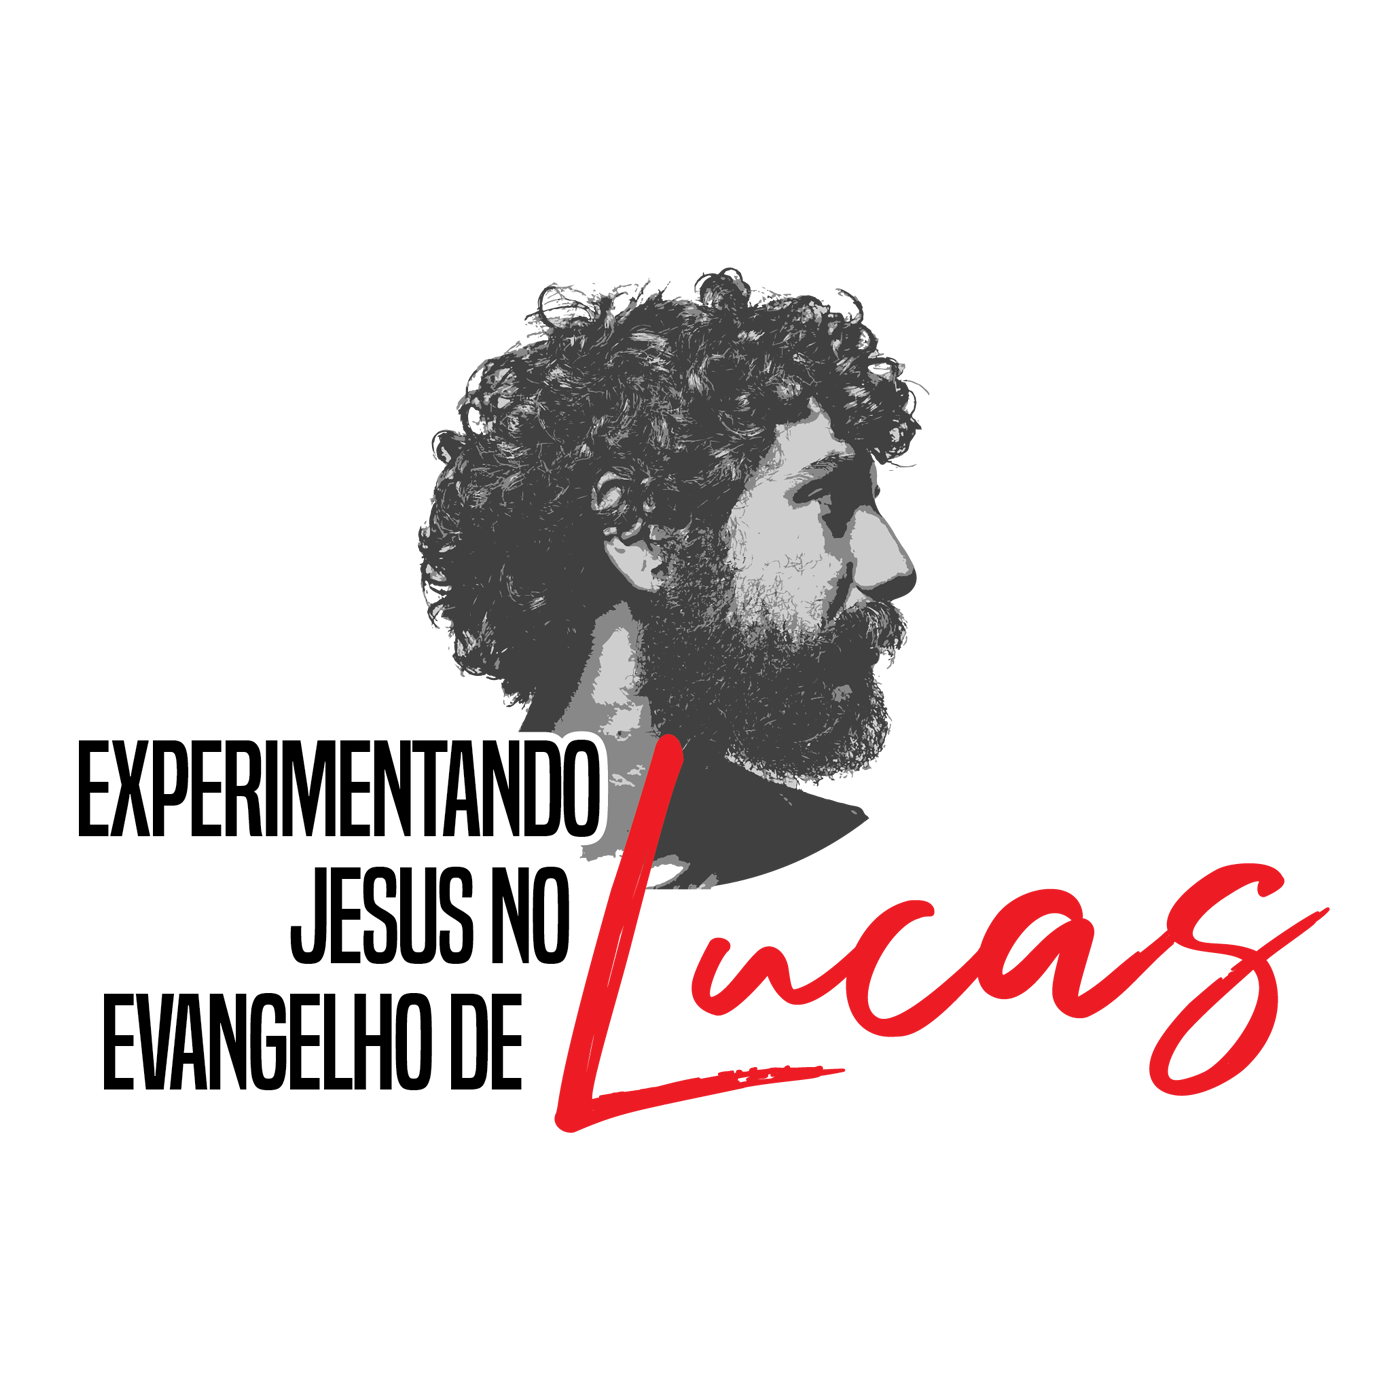 Lucas 6:31